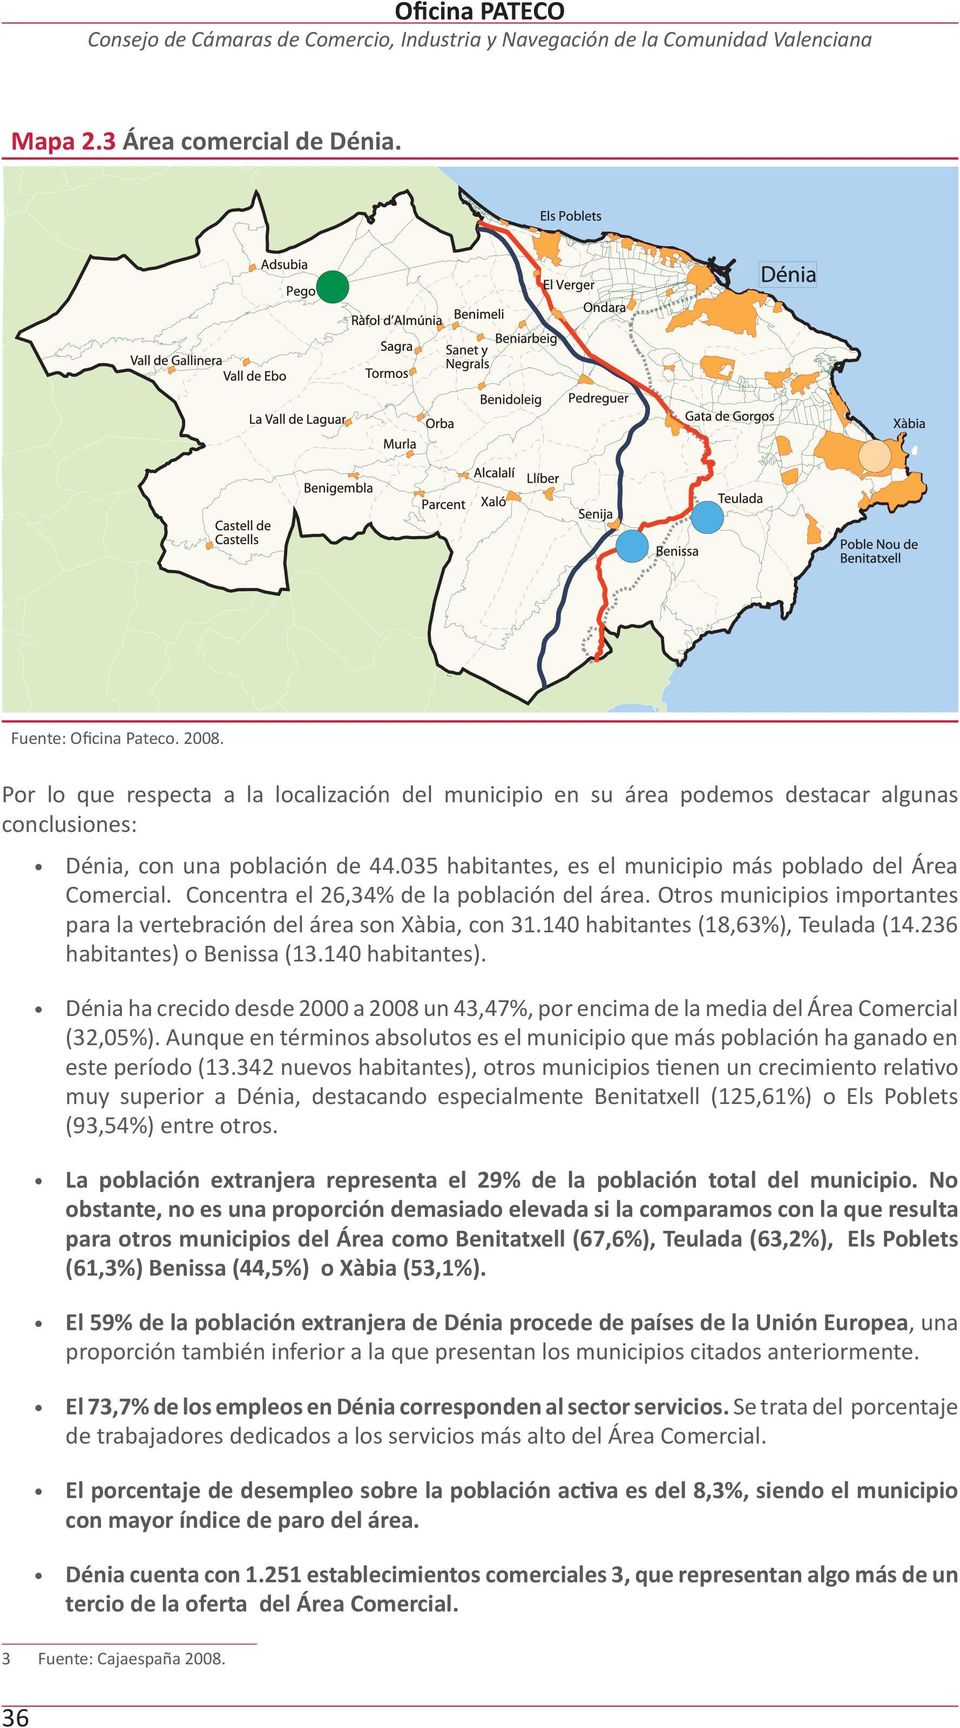 Concentra el 26,34% de la población del área. Otros municipios importantes para la vertebración del área son Xàbia, con 31.140 habitantes (18,63%), Teulada (14.236 habitantes) o Benissa (13.